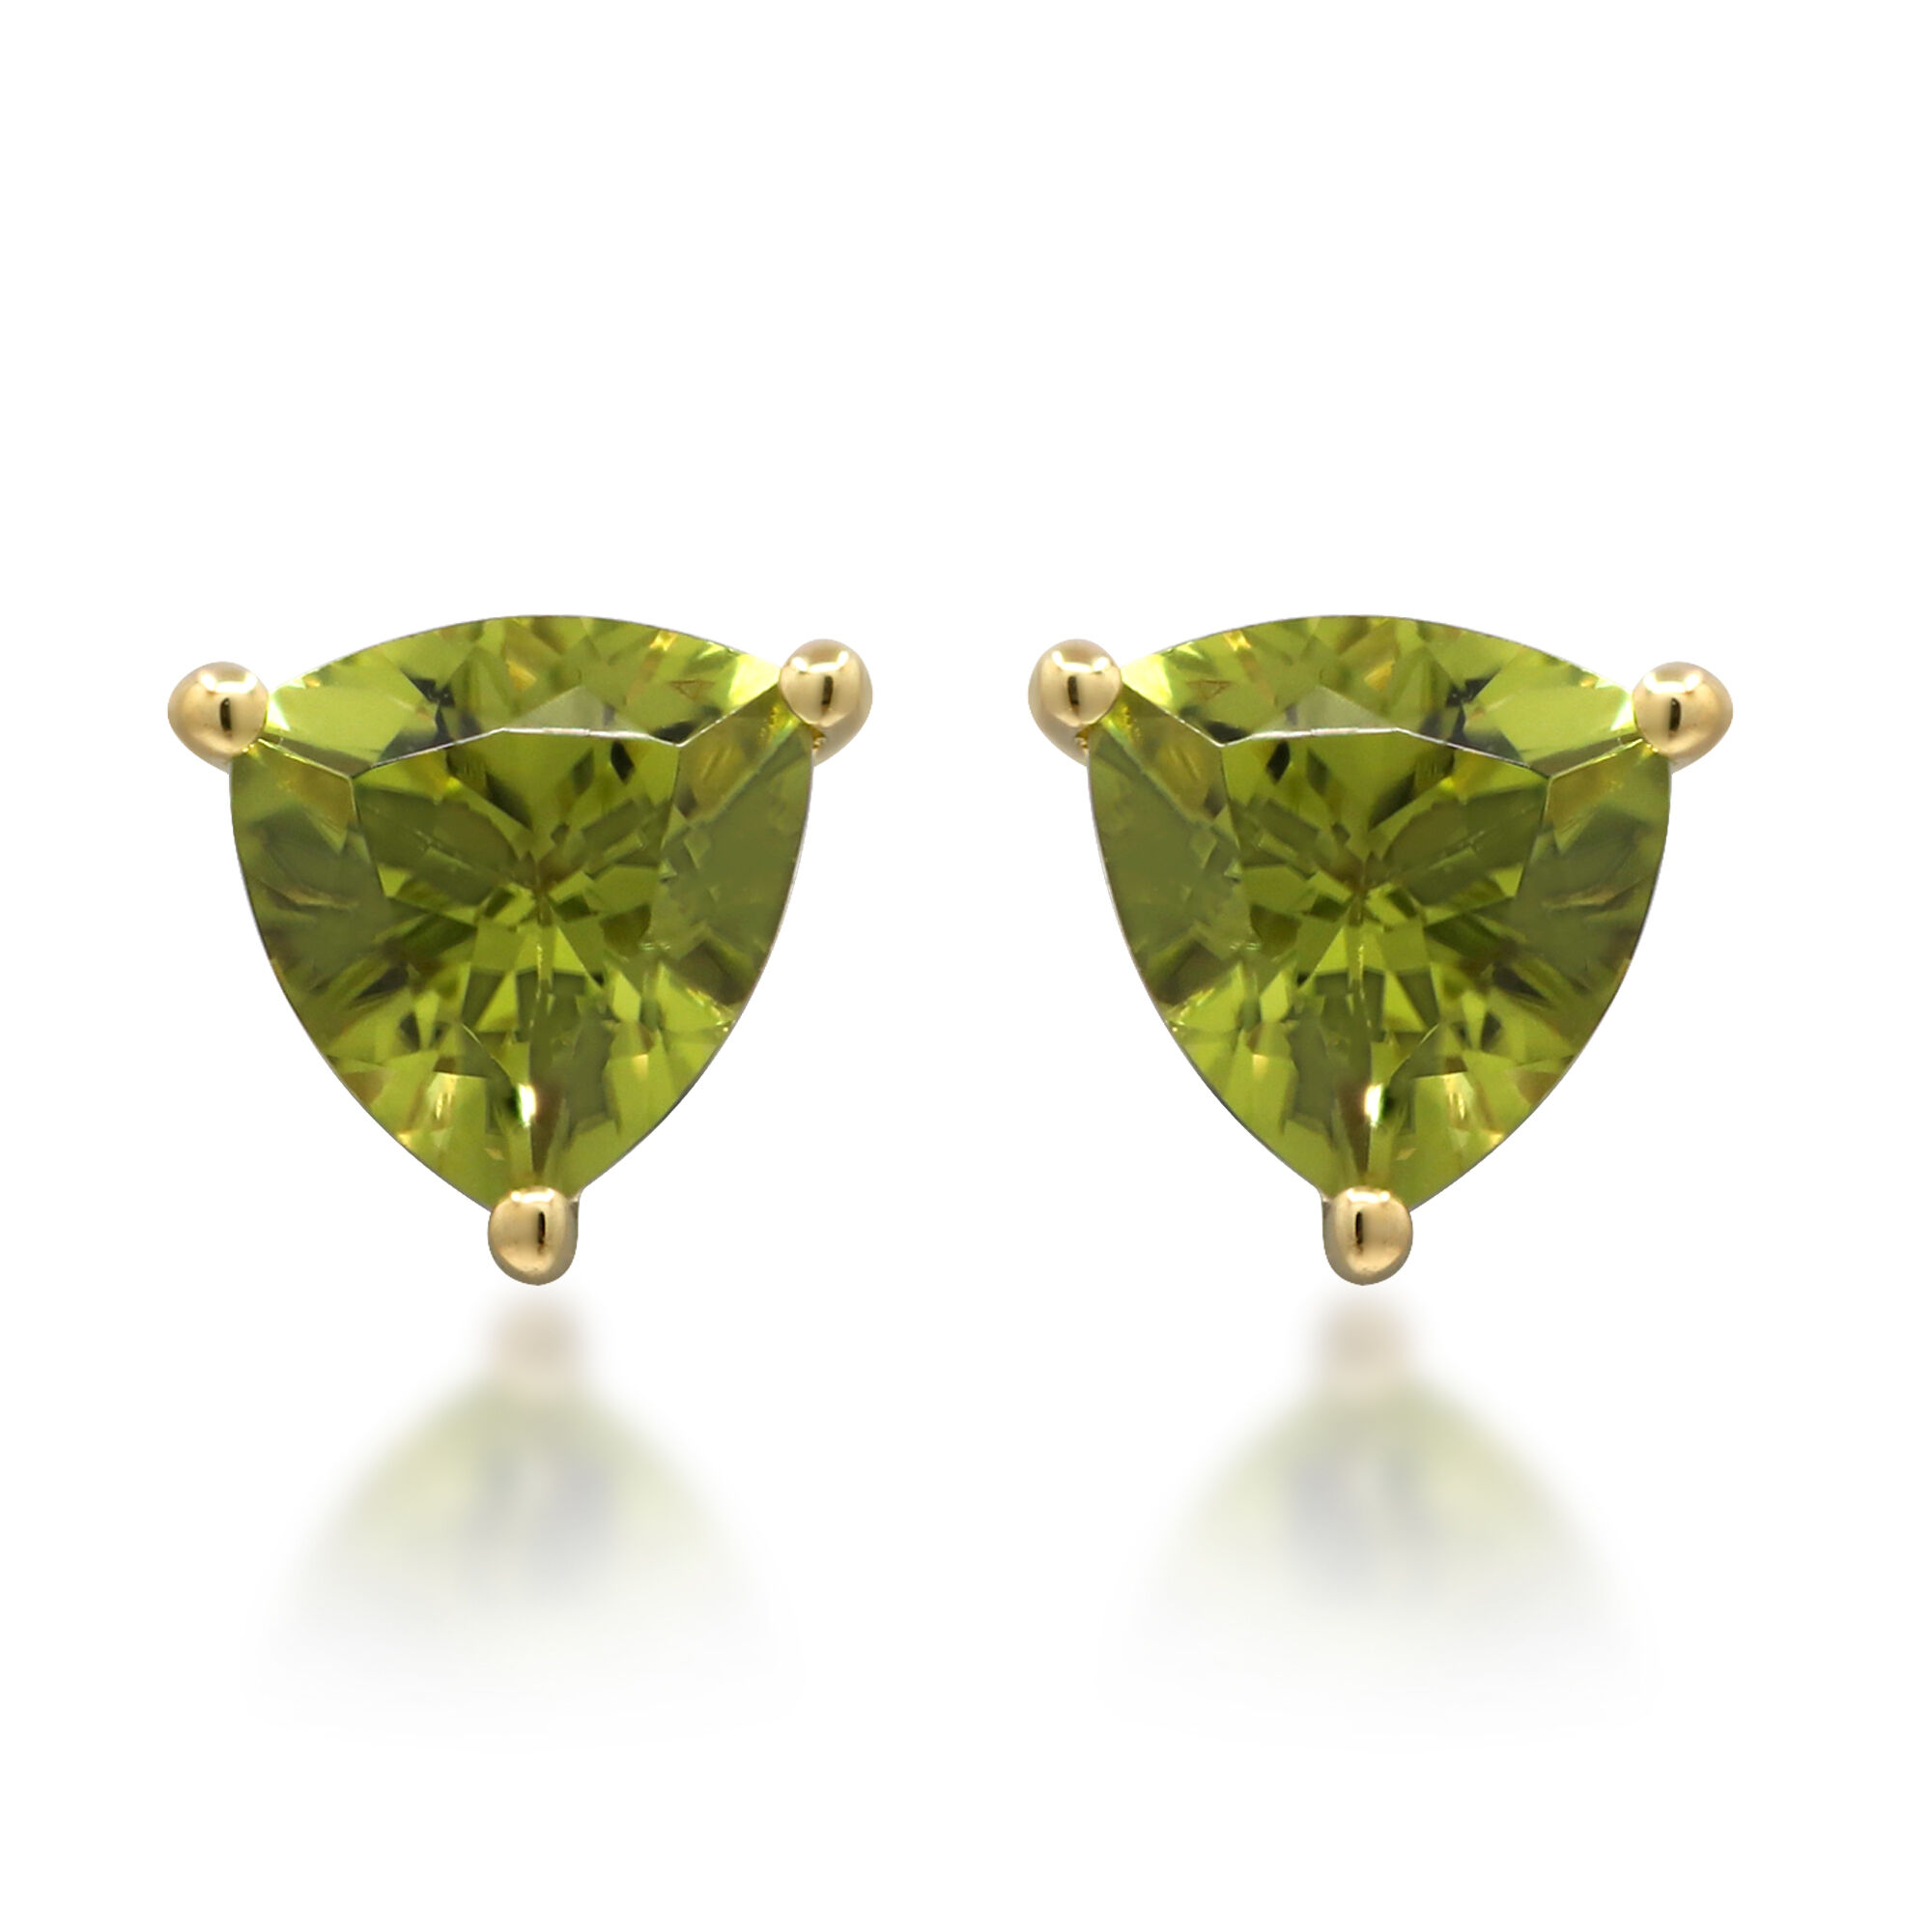 Intricate peridot heritage gold earrings – Carousel Jewels